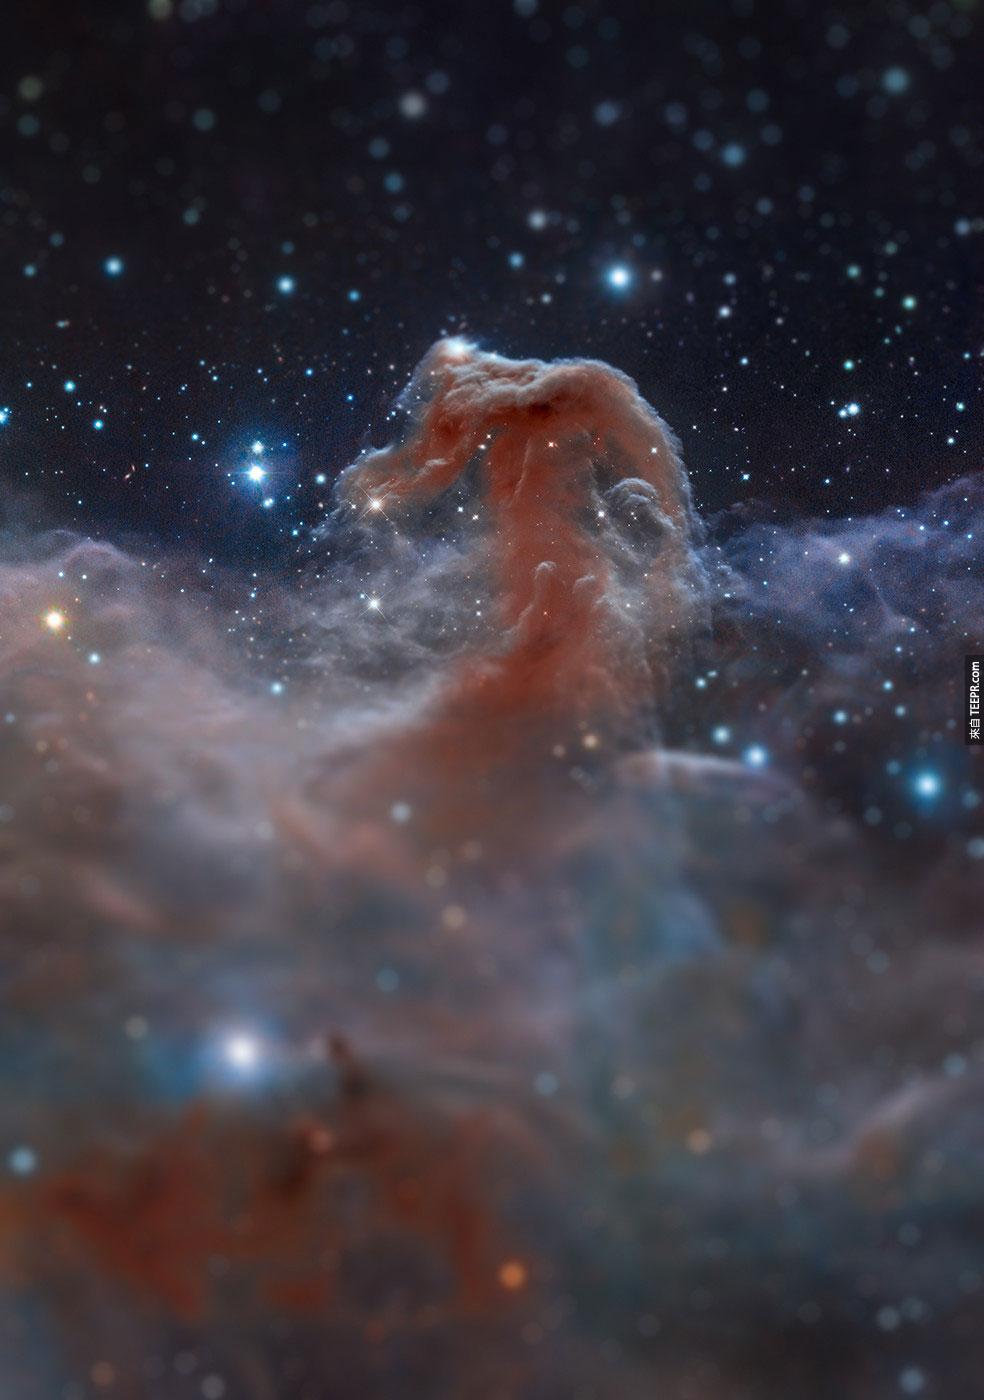 1. 馬頭星雲 (Horsehead Nebula)